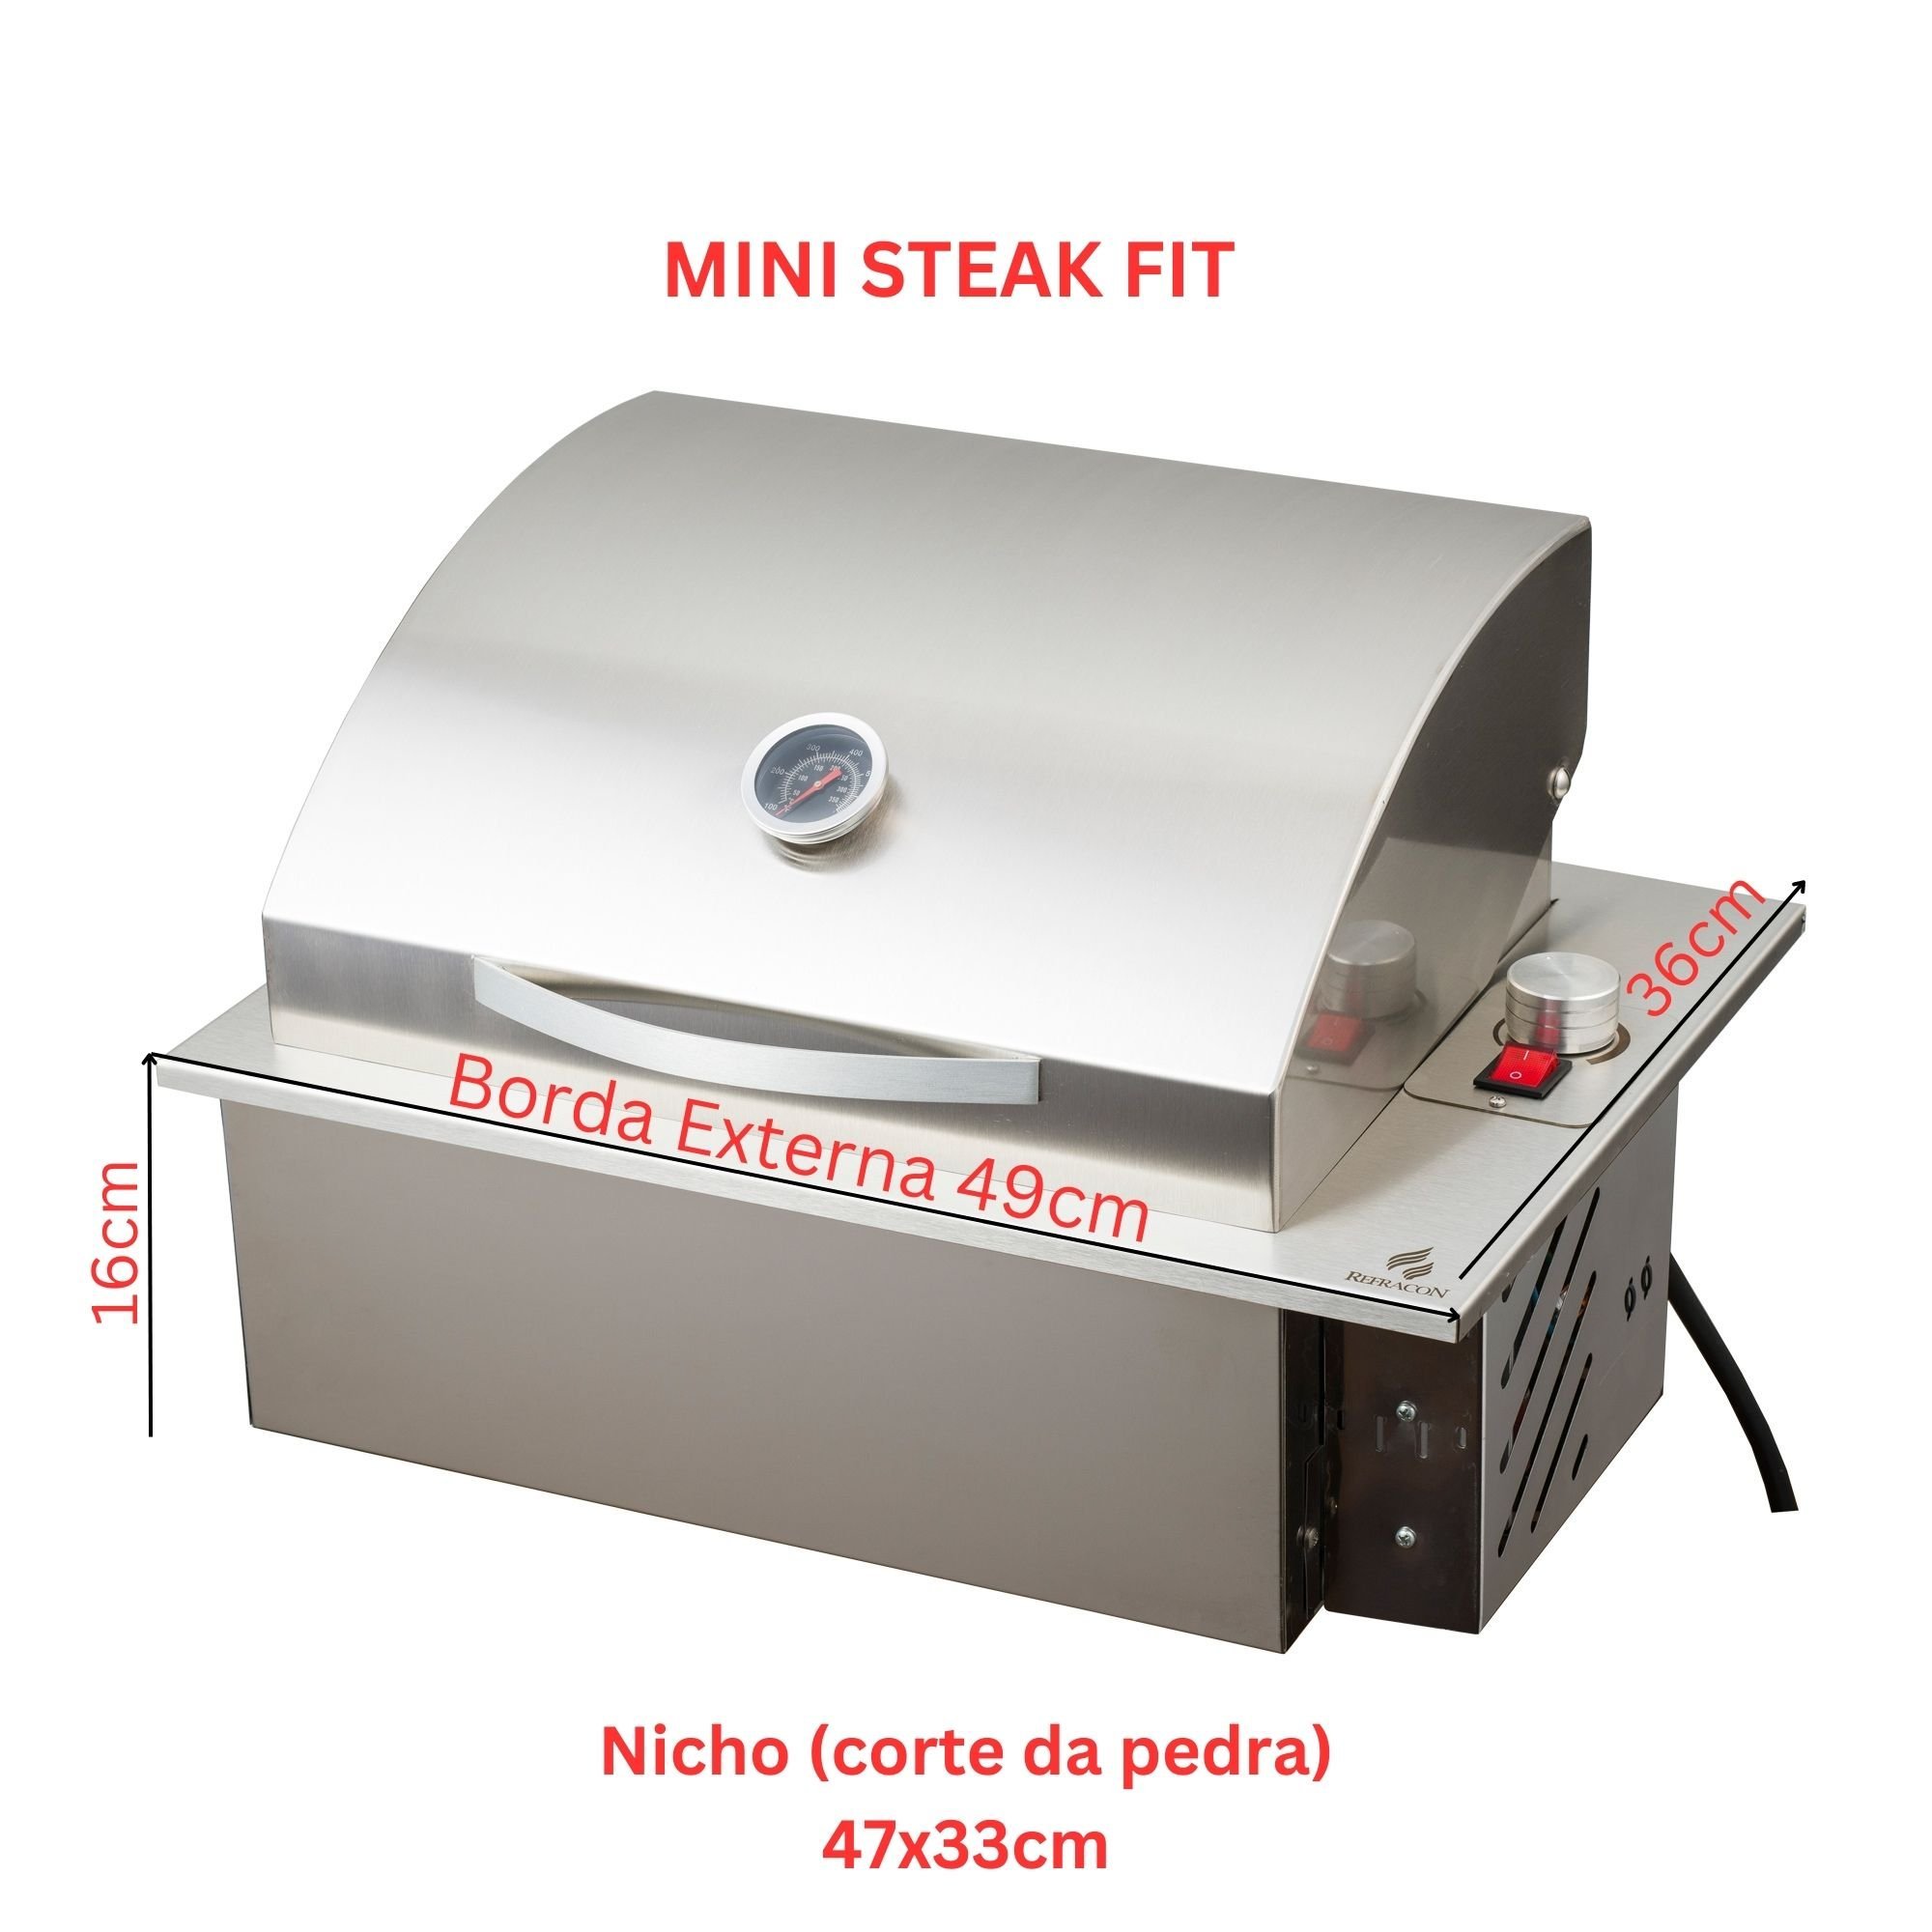 Mini Steak Churrasqueira Elétrica De Embutir Em Inox 304 com Tampa Abafador 49x36cm 220V Refracon - 2